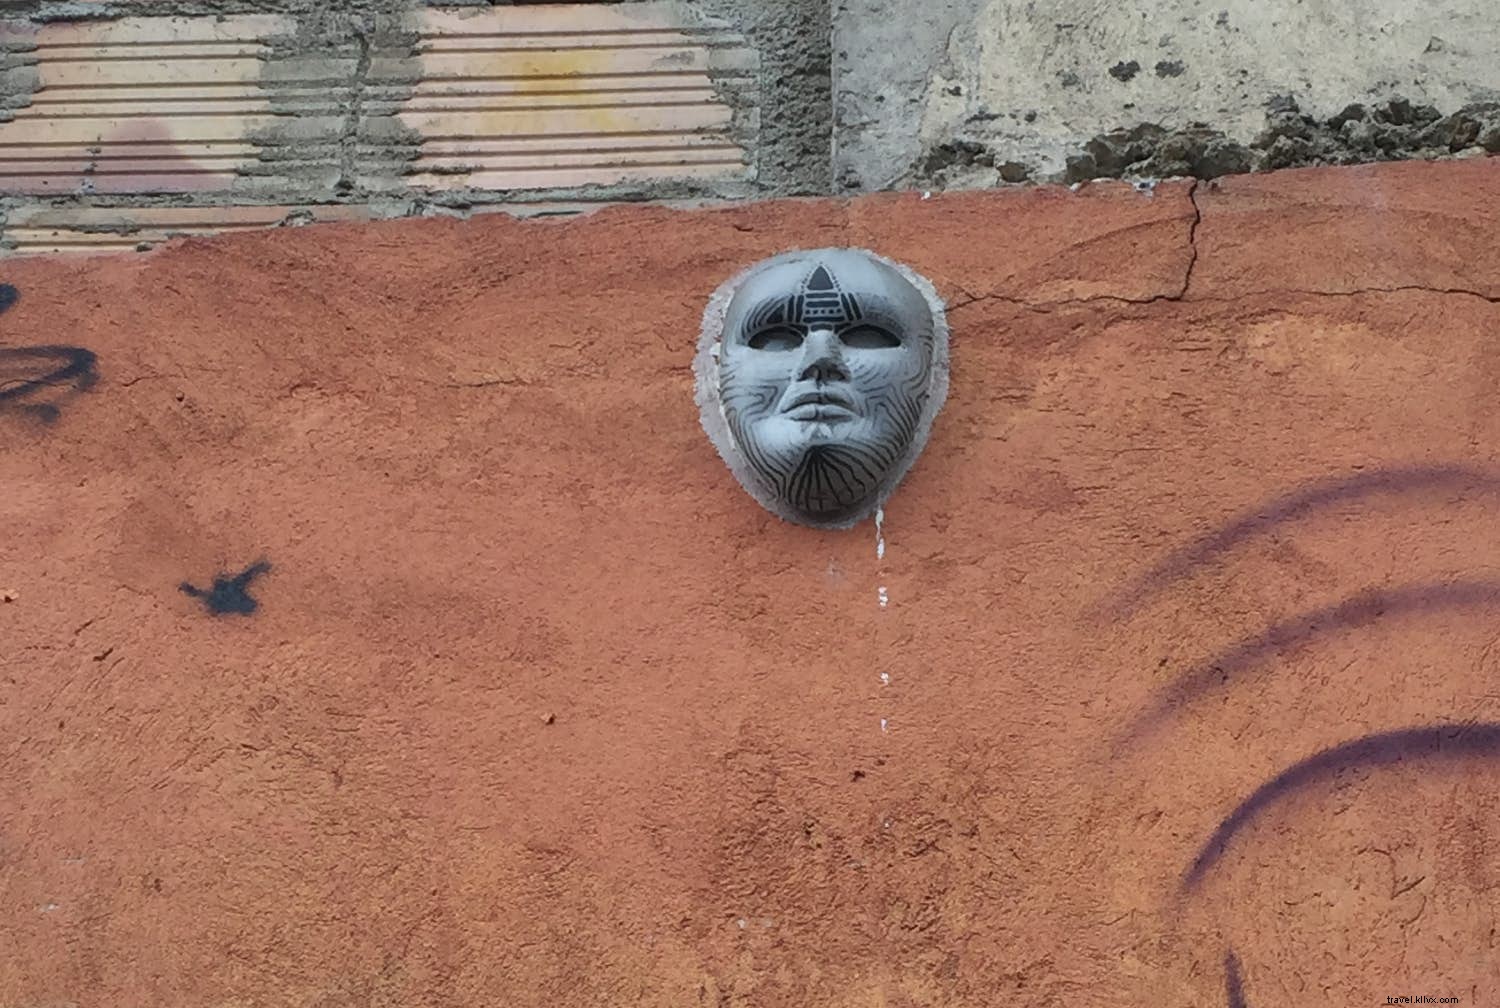 Rédea livre:a notável arte de rua de Bogotá 